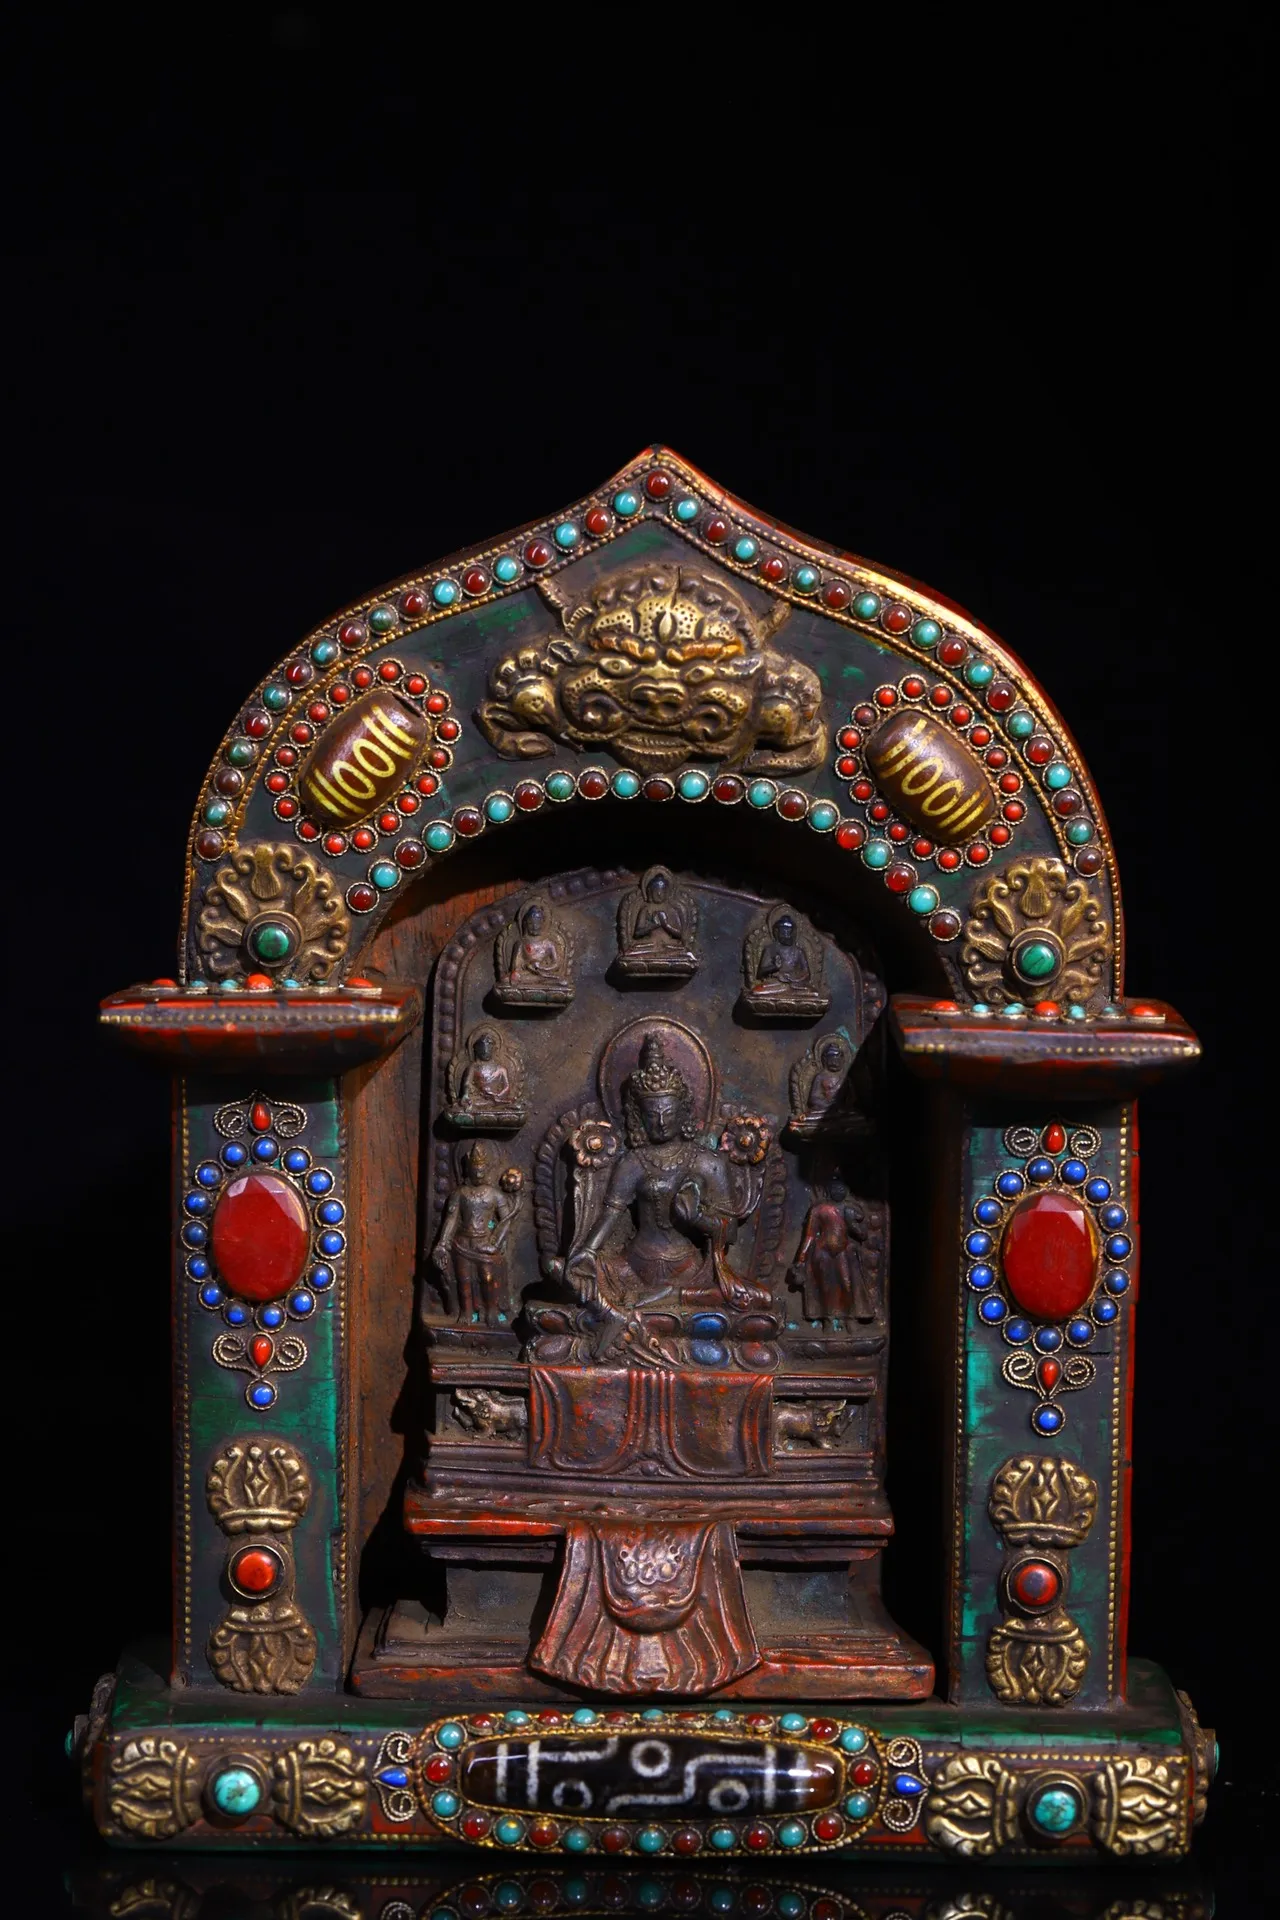 

Коллекция тибетских храмов 9 дюймов, старая бронзовая роспись, мозаика, драгоценный камень, gZi, бирюзовые, зеленые, тара, буддийские нишевые поклонения, зал